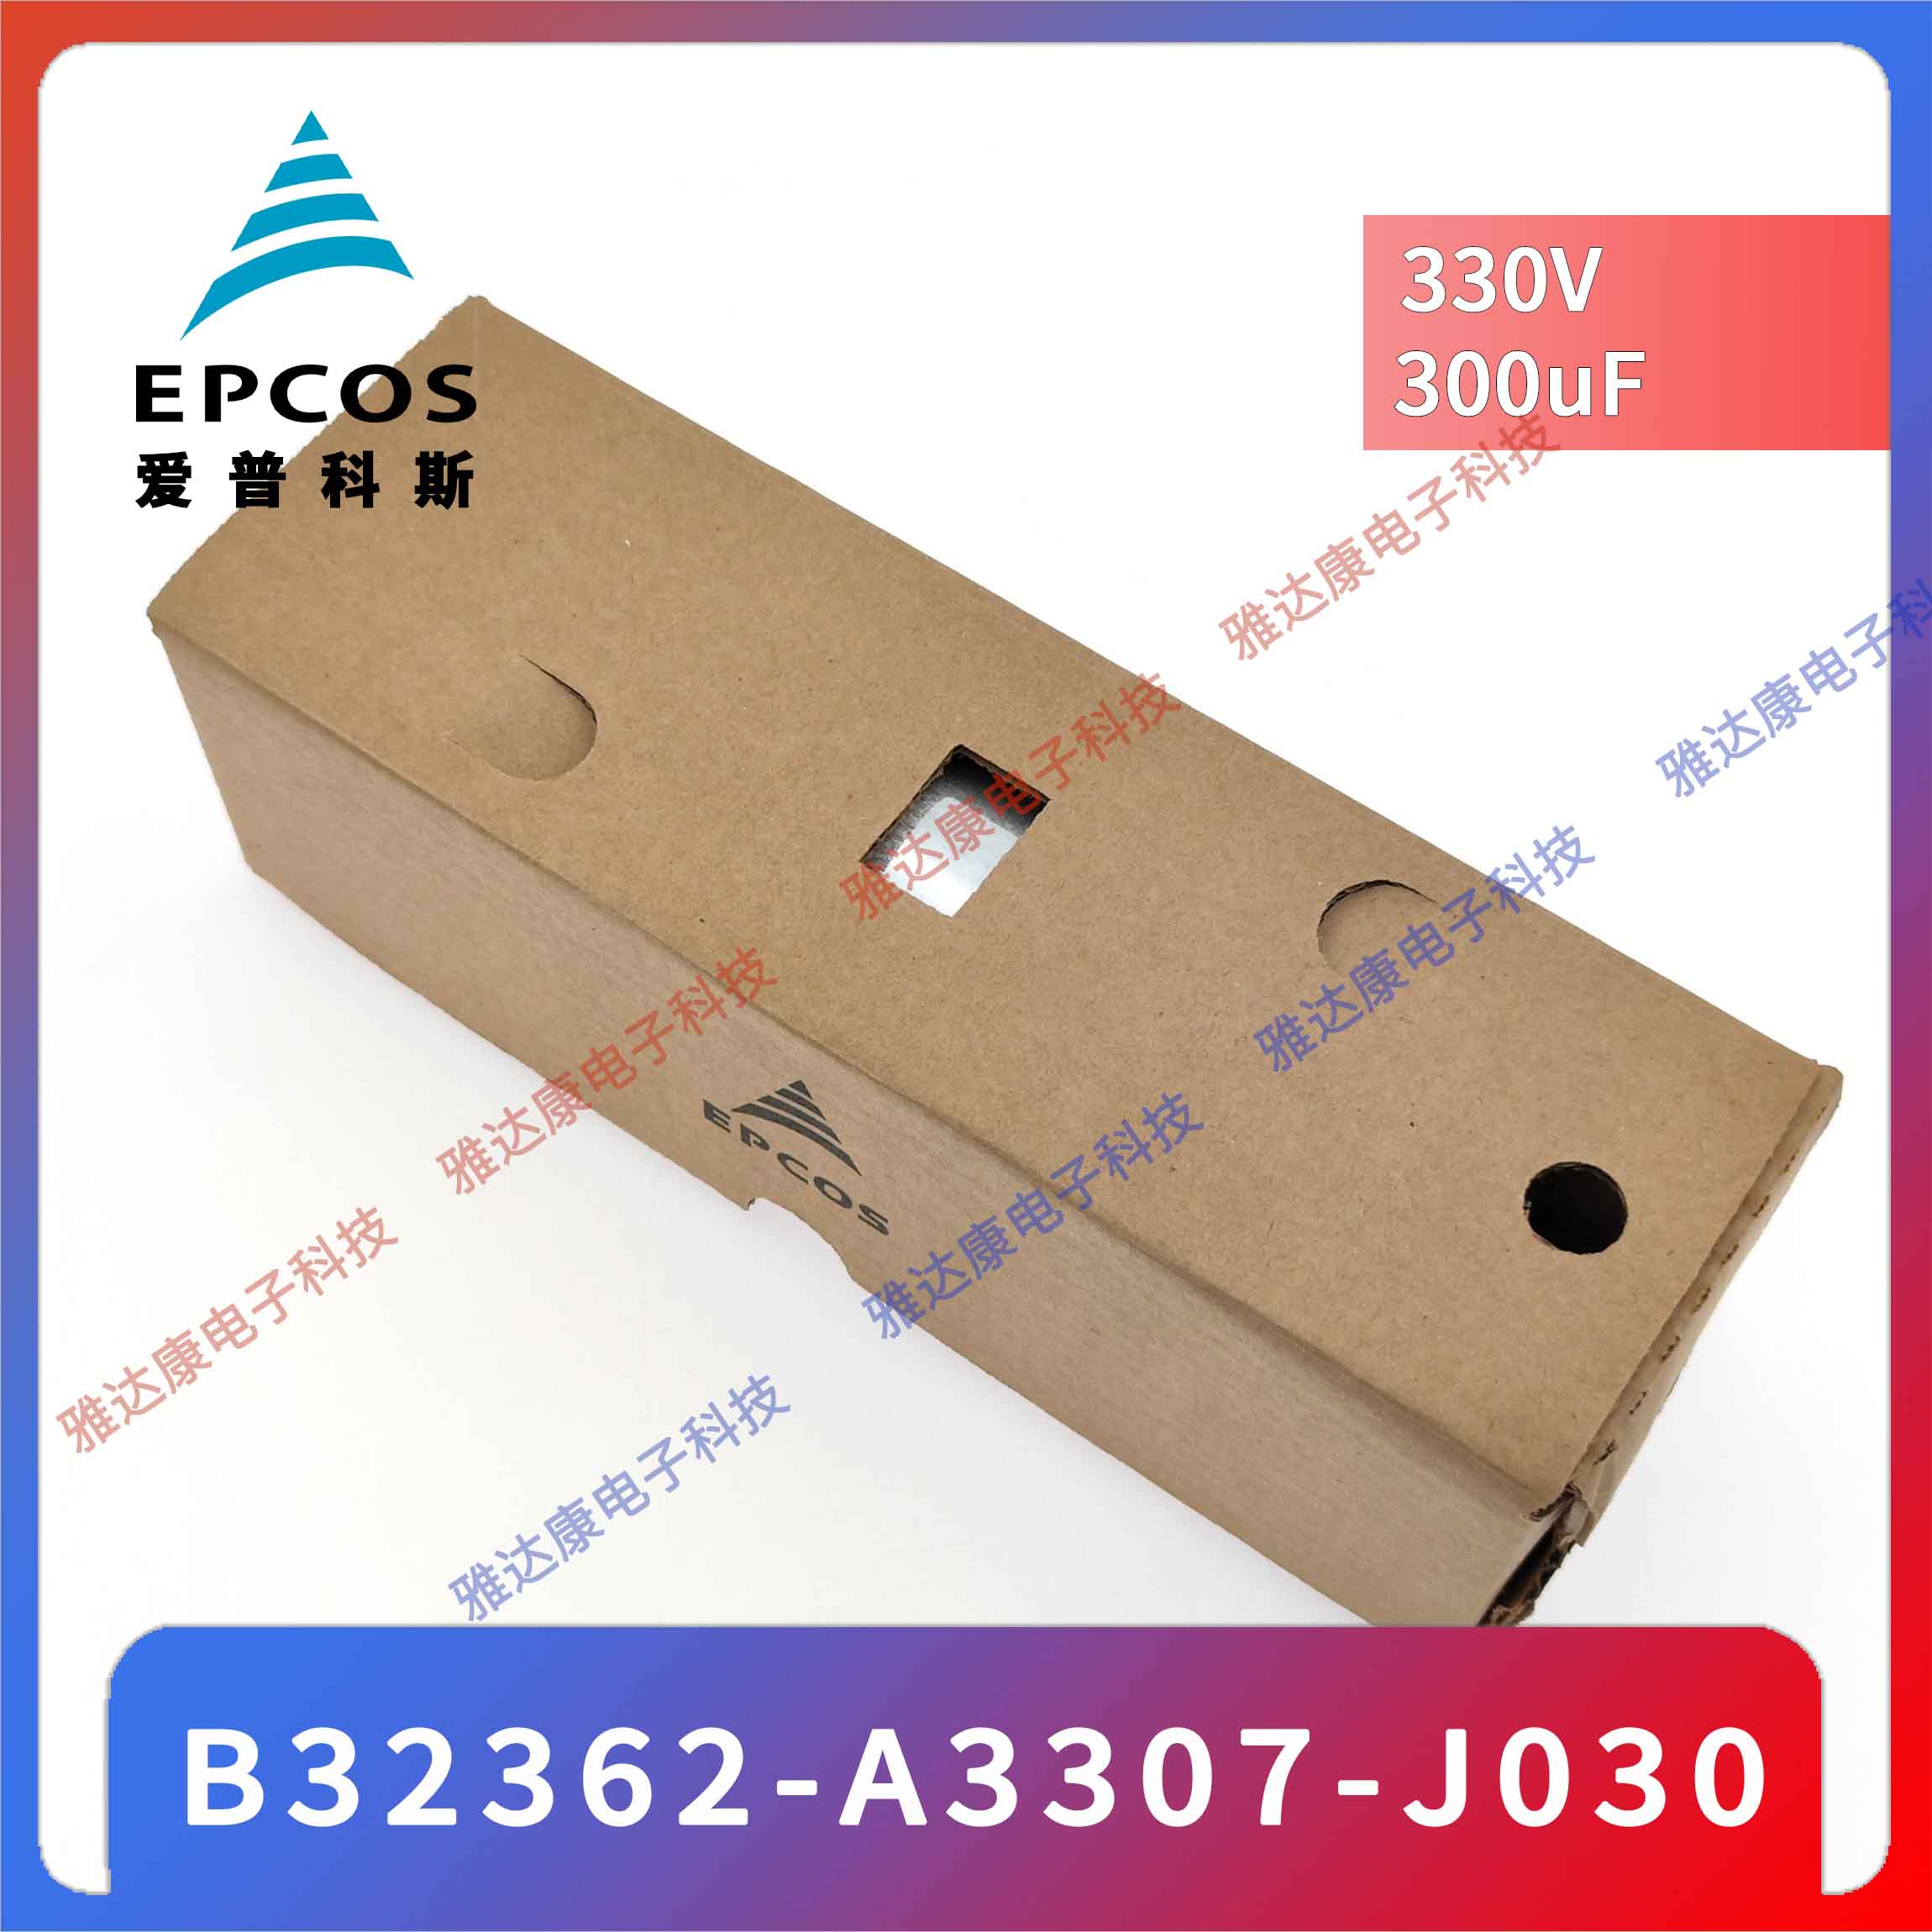 EPCOS电容器优势现货供应薄膜电容器B25667C4237A375 MKK440-D-14.2-01图片